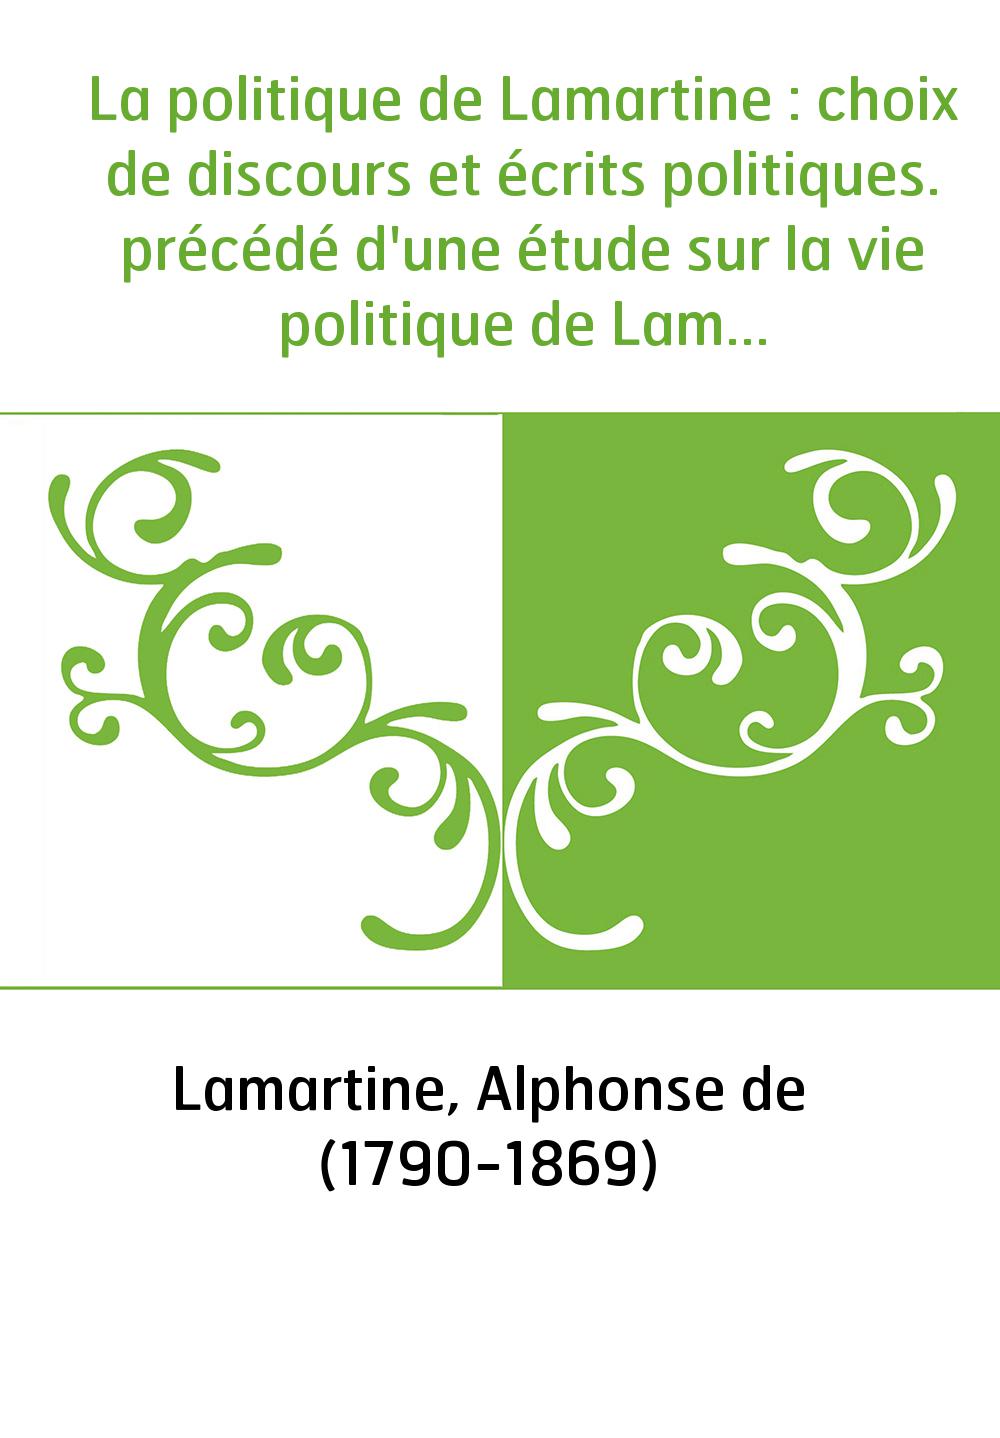 La politique de Lamartine : choix de discours et écrits politiques. précédé d'une étude sur la vie politique de Lamartine. Tome 